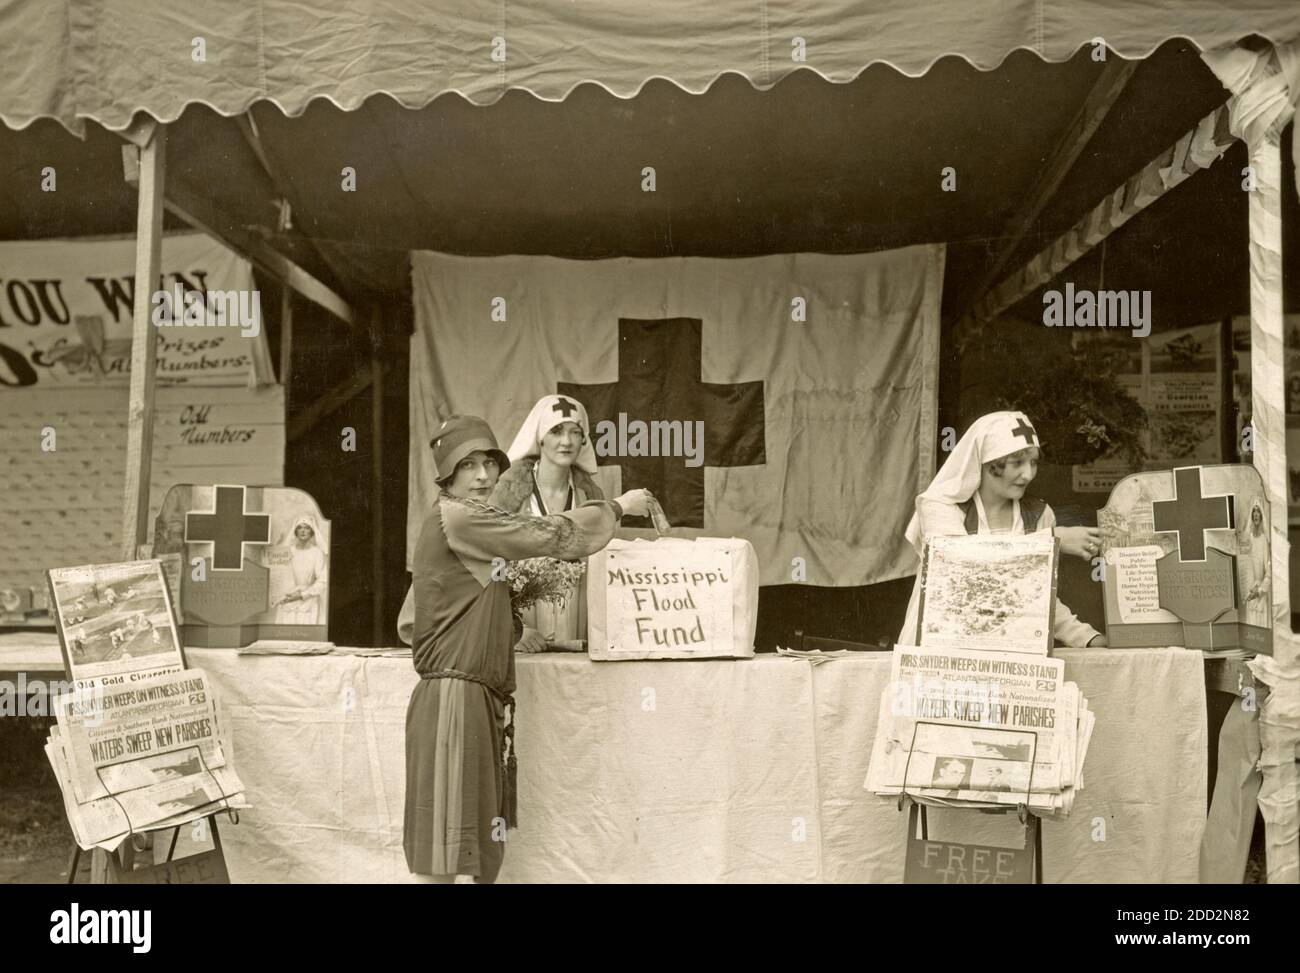 Personne n'a eu faim, vêtu, non protégé le stand de la section du comté de DeKalb pour lever des fonds de secours était un centre d'intérêt à une foire à Decatur, Géorgie - la photographie montre les travailleurs de la Croix-Rouge à un stand et une femme faisant un don à Mississippi Flood Fund, 1927 Banque D'Images